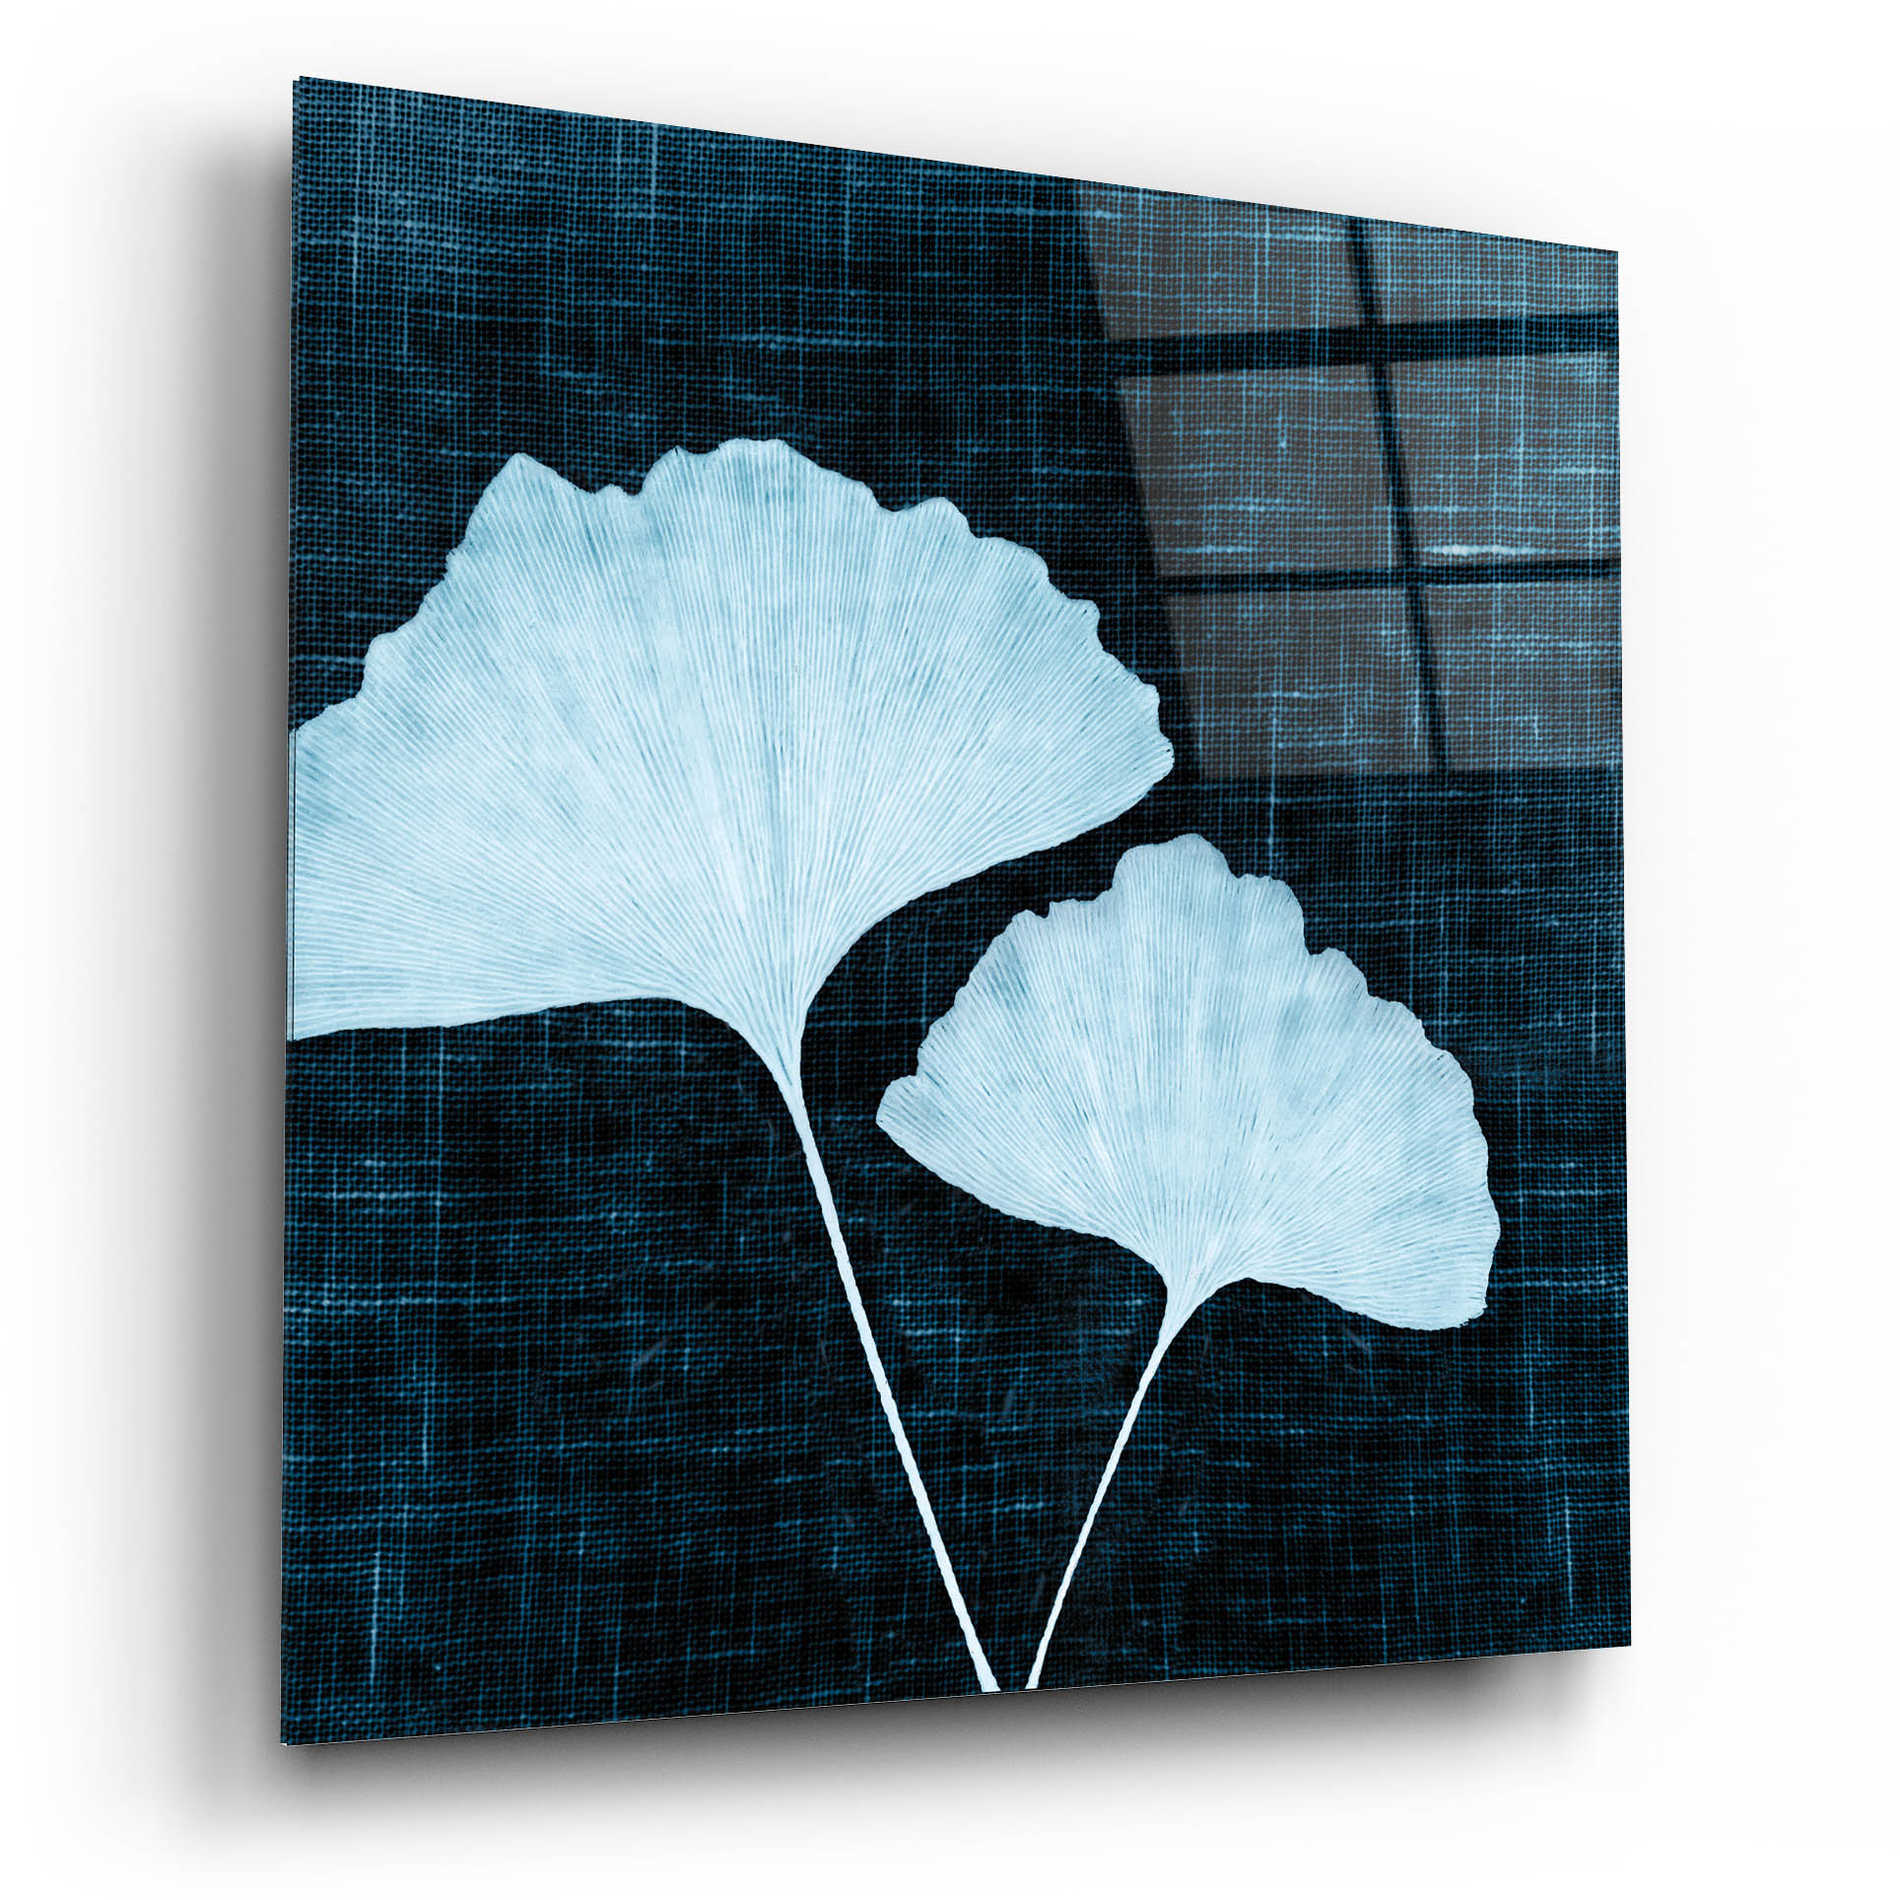 Epic Art 'Leaves on Linen I' by Debra Van Swearingen, Acrylic Glass Wall Art,12x12